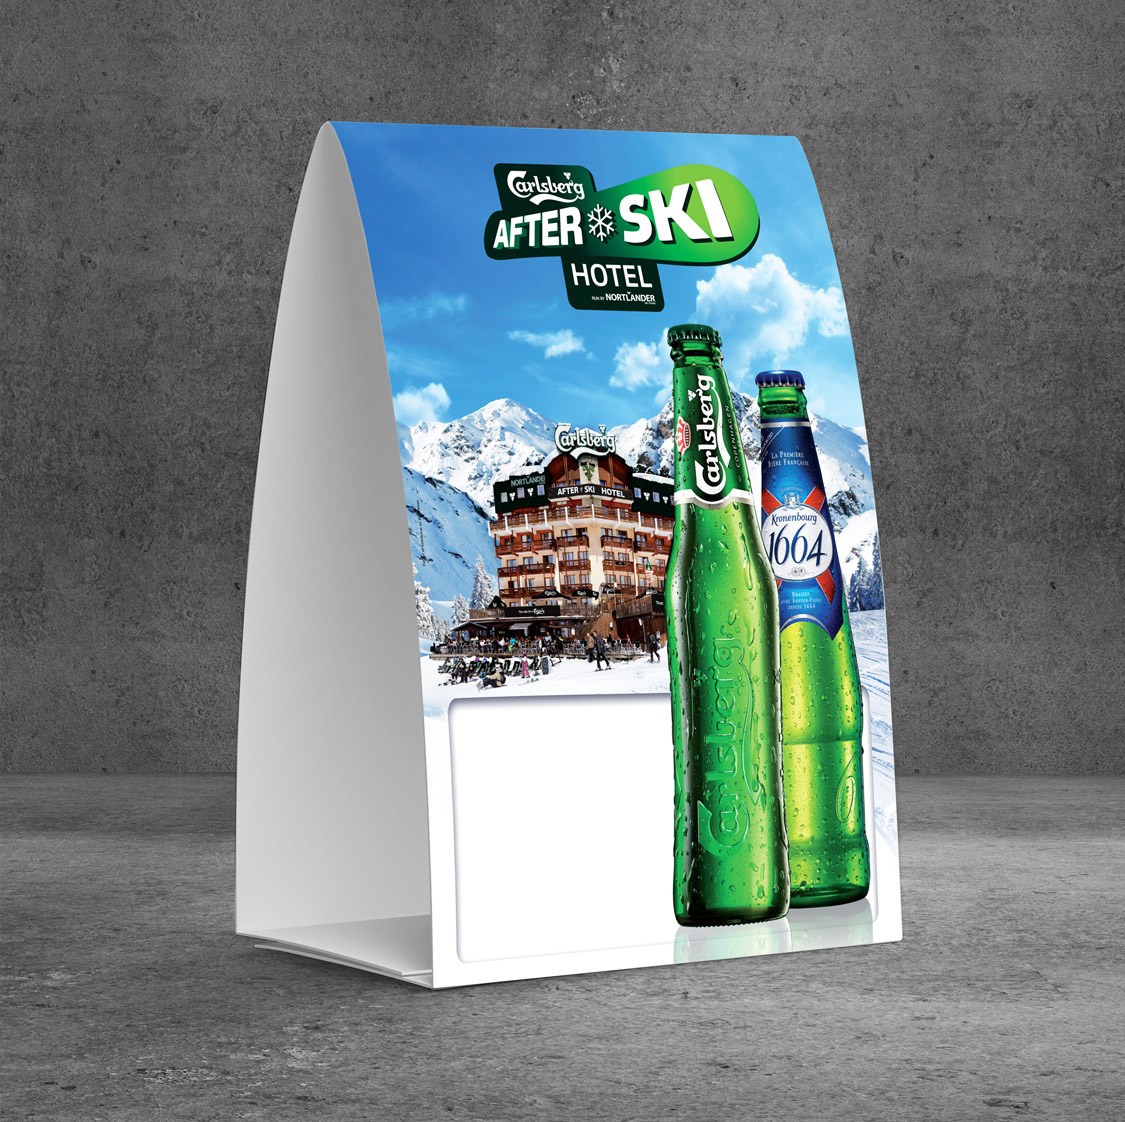 Carlsberg Beer / After Ski Hotel BTL Campaign